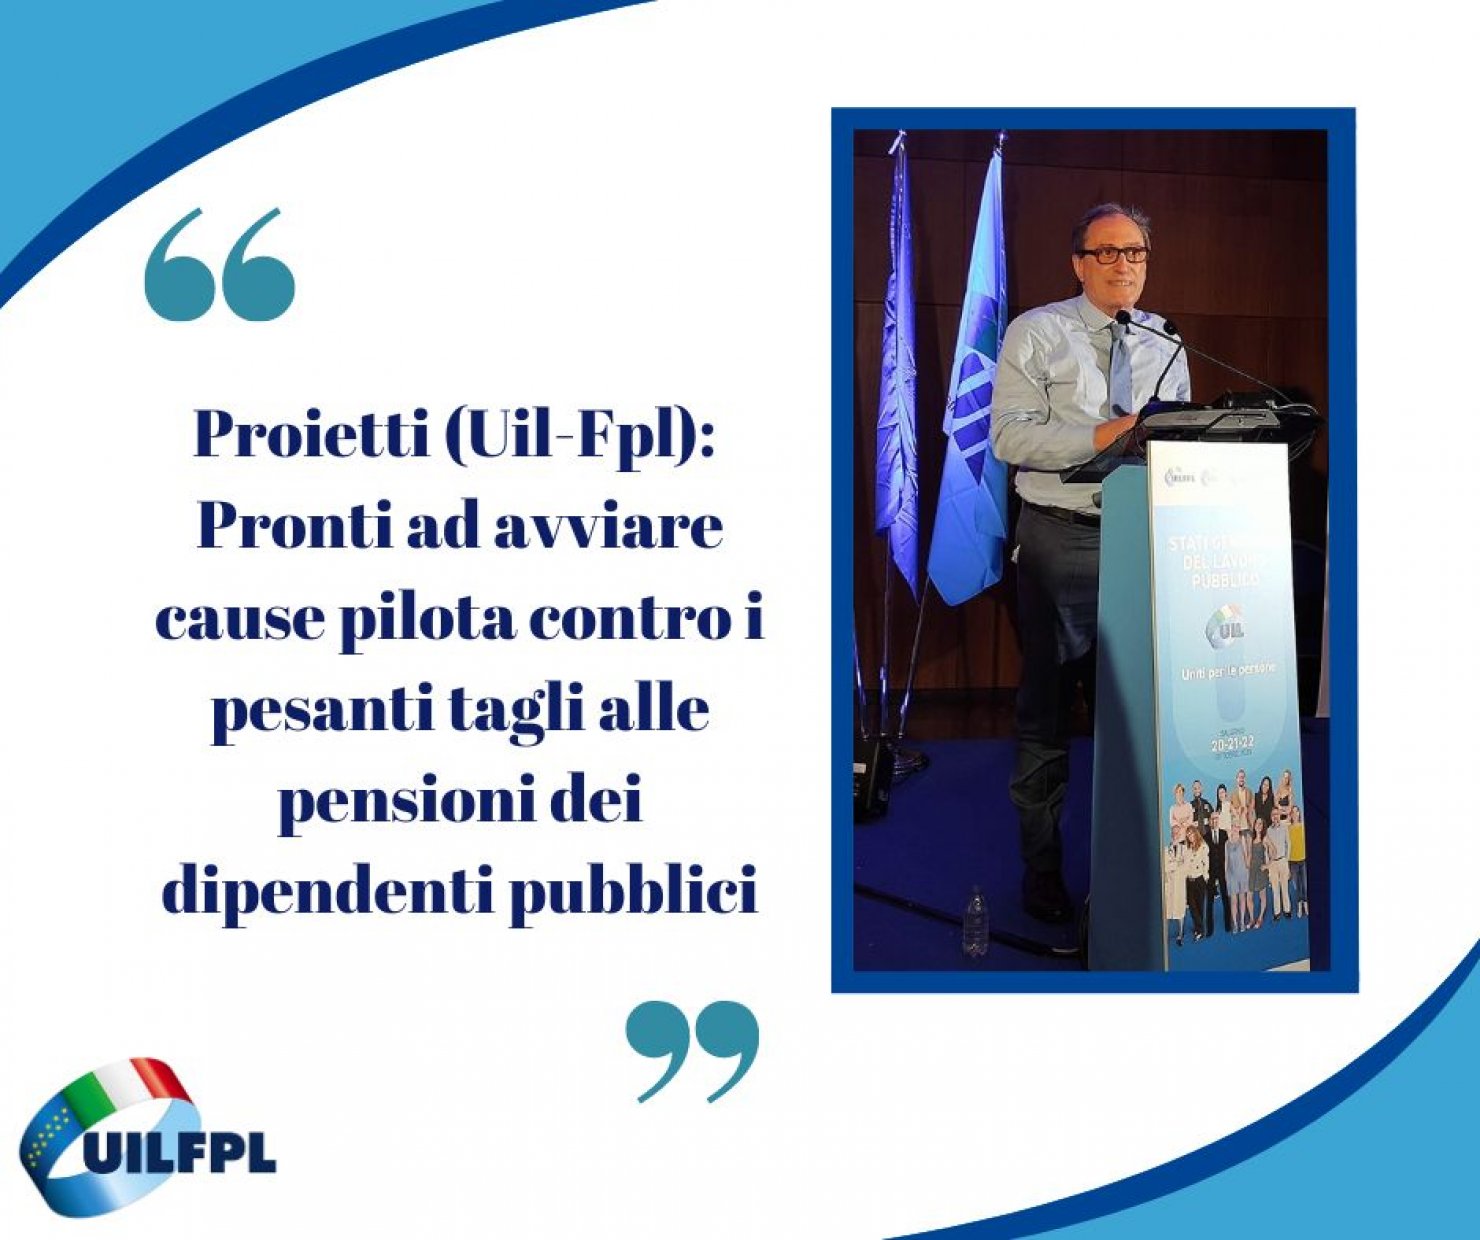 Uil-Fpl, Domenico Proietti: "Pronti ad avviare cause pilota contro i tagli alle pensioni dei dipendenti pubblici"